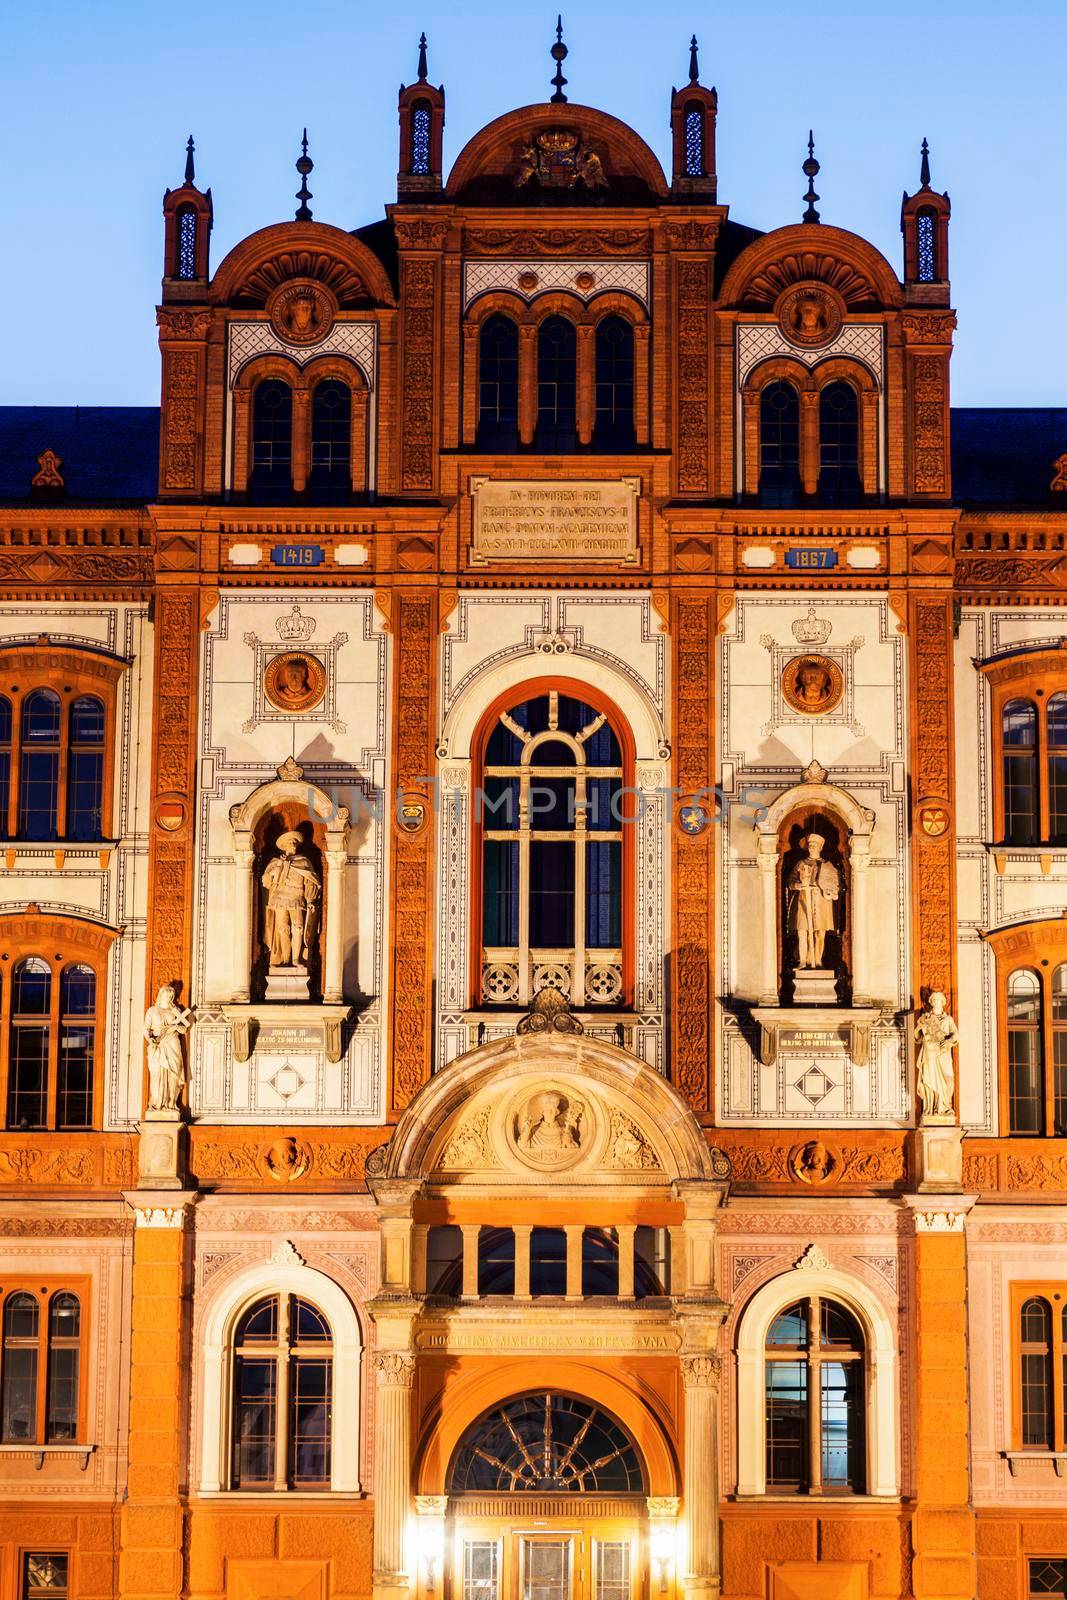 University of Rostock by benkrut